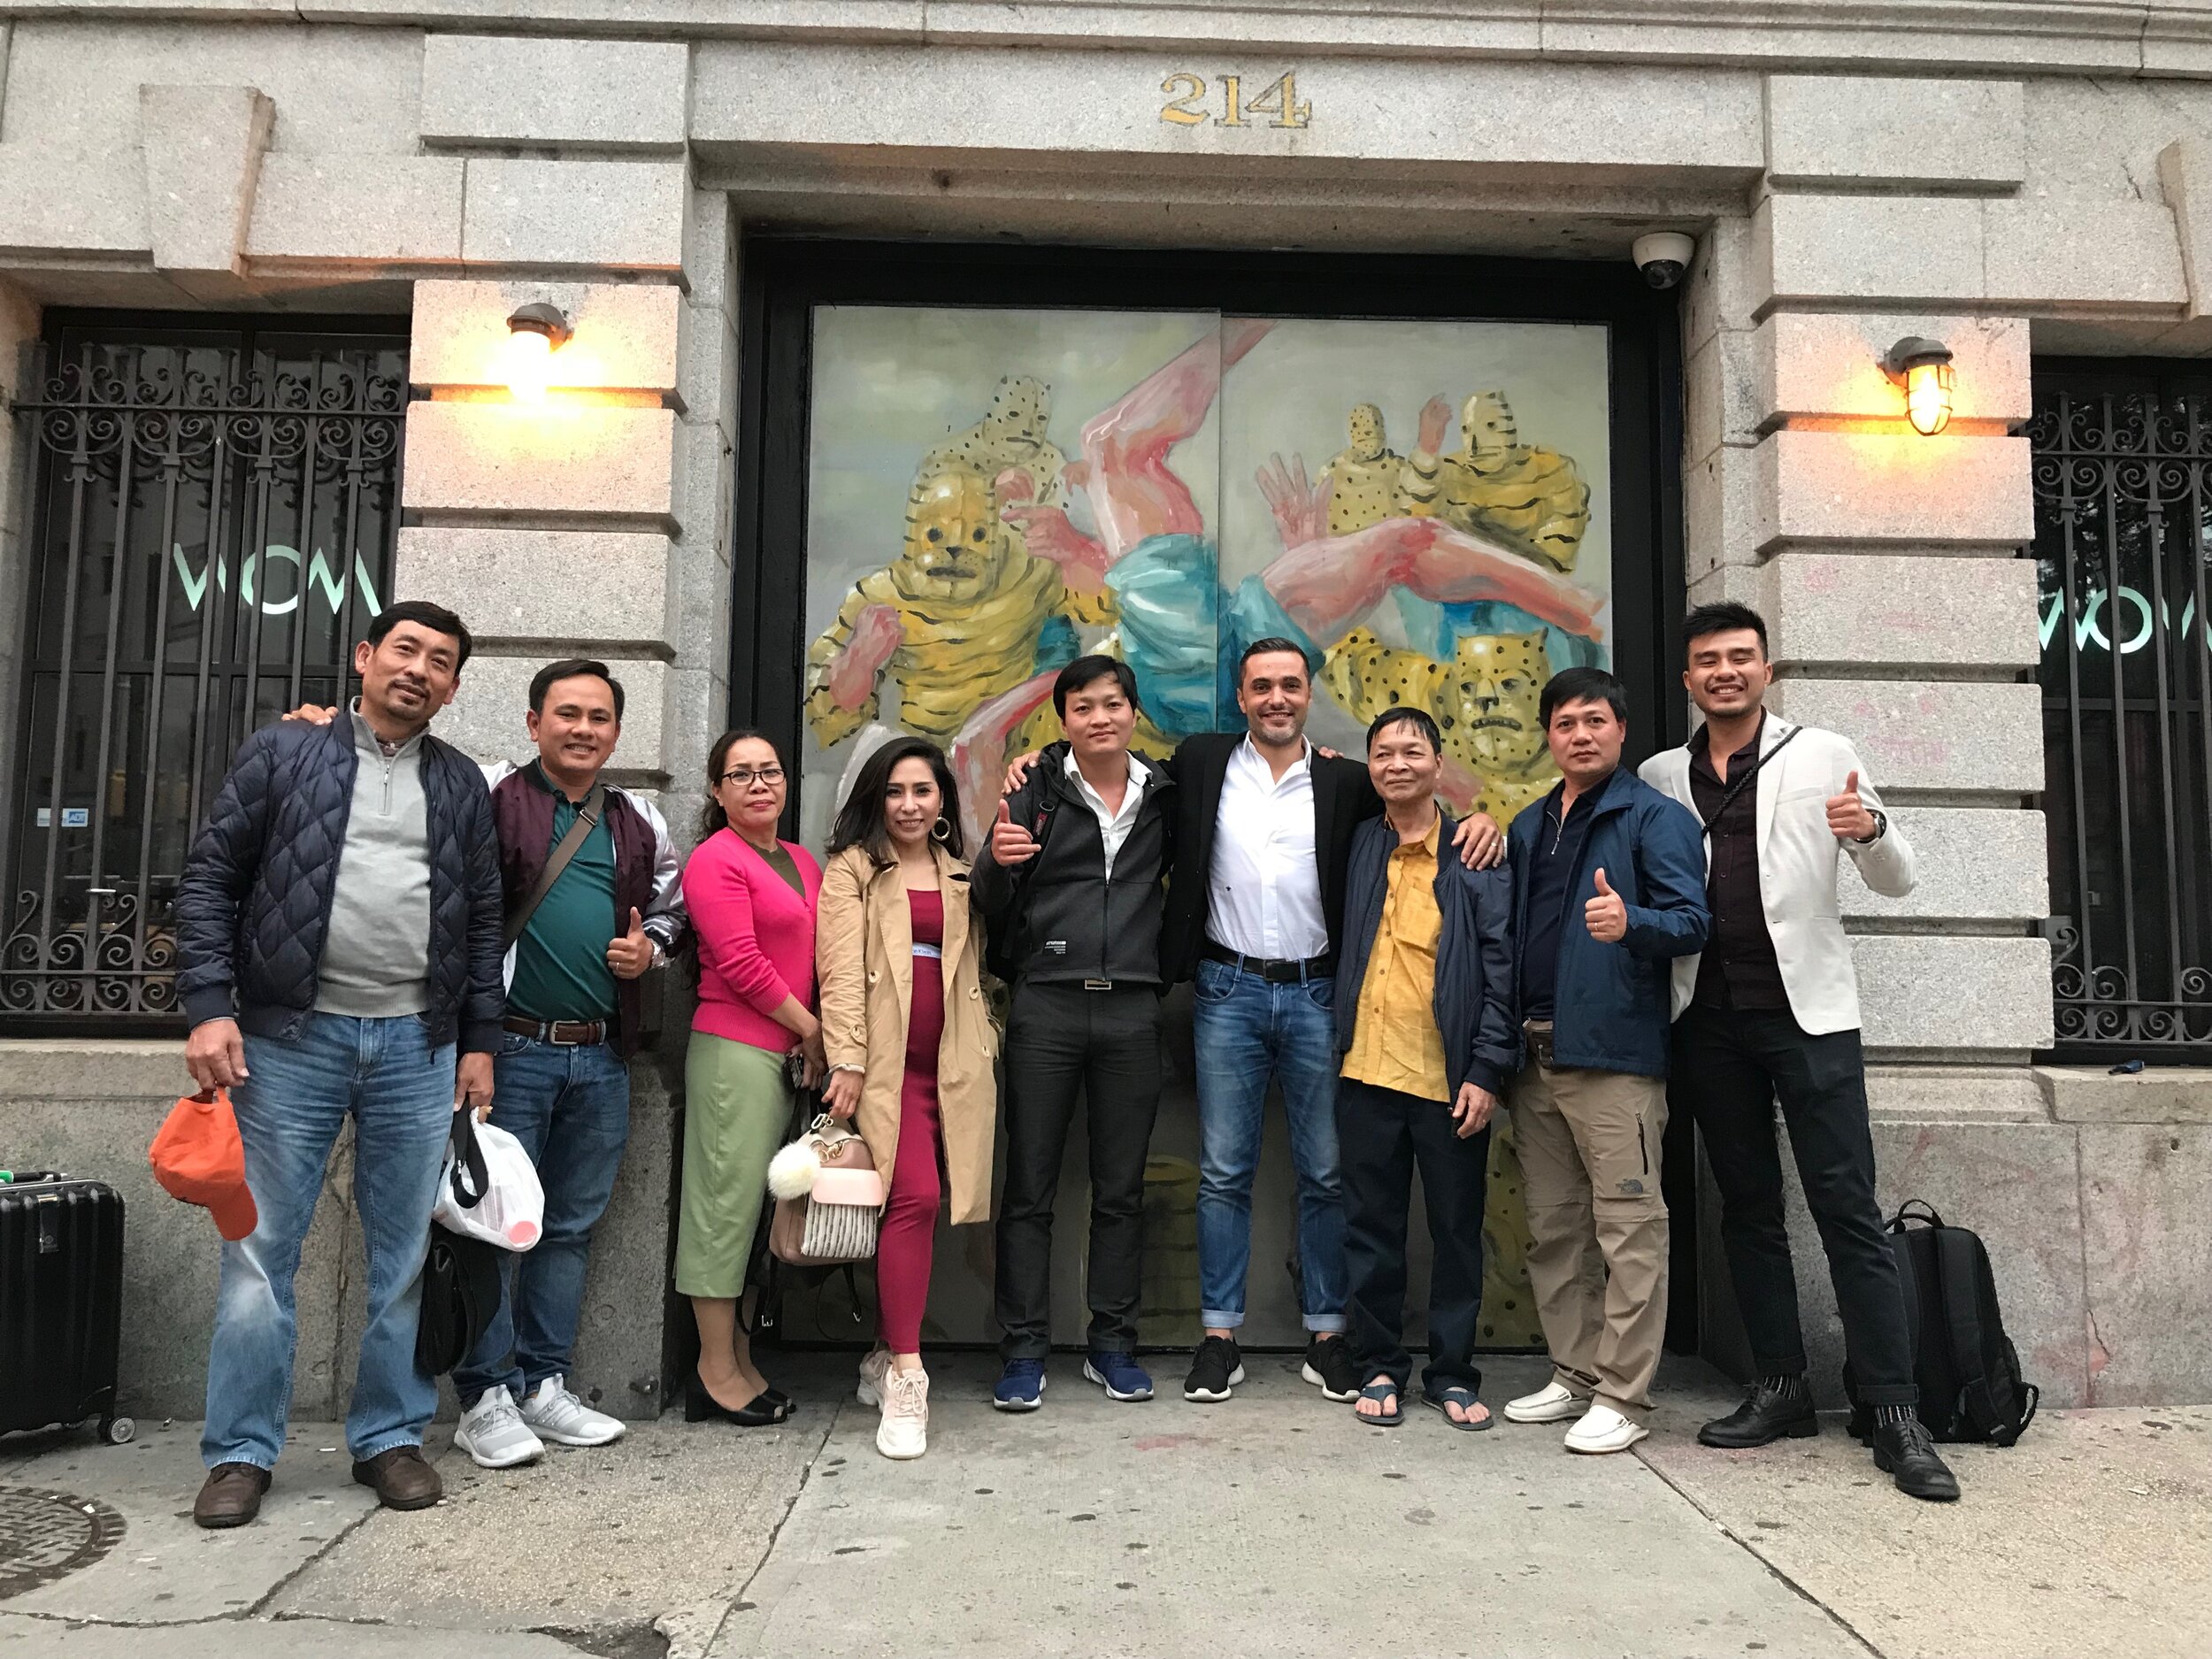 Đoàn Việt Nam chụp hình cùng với đại diện của McIntosh tại cửa trước của tòa nhà Townhouse vào năm 2019